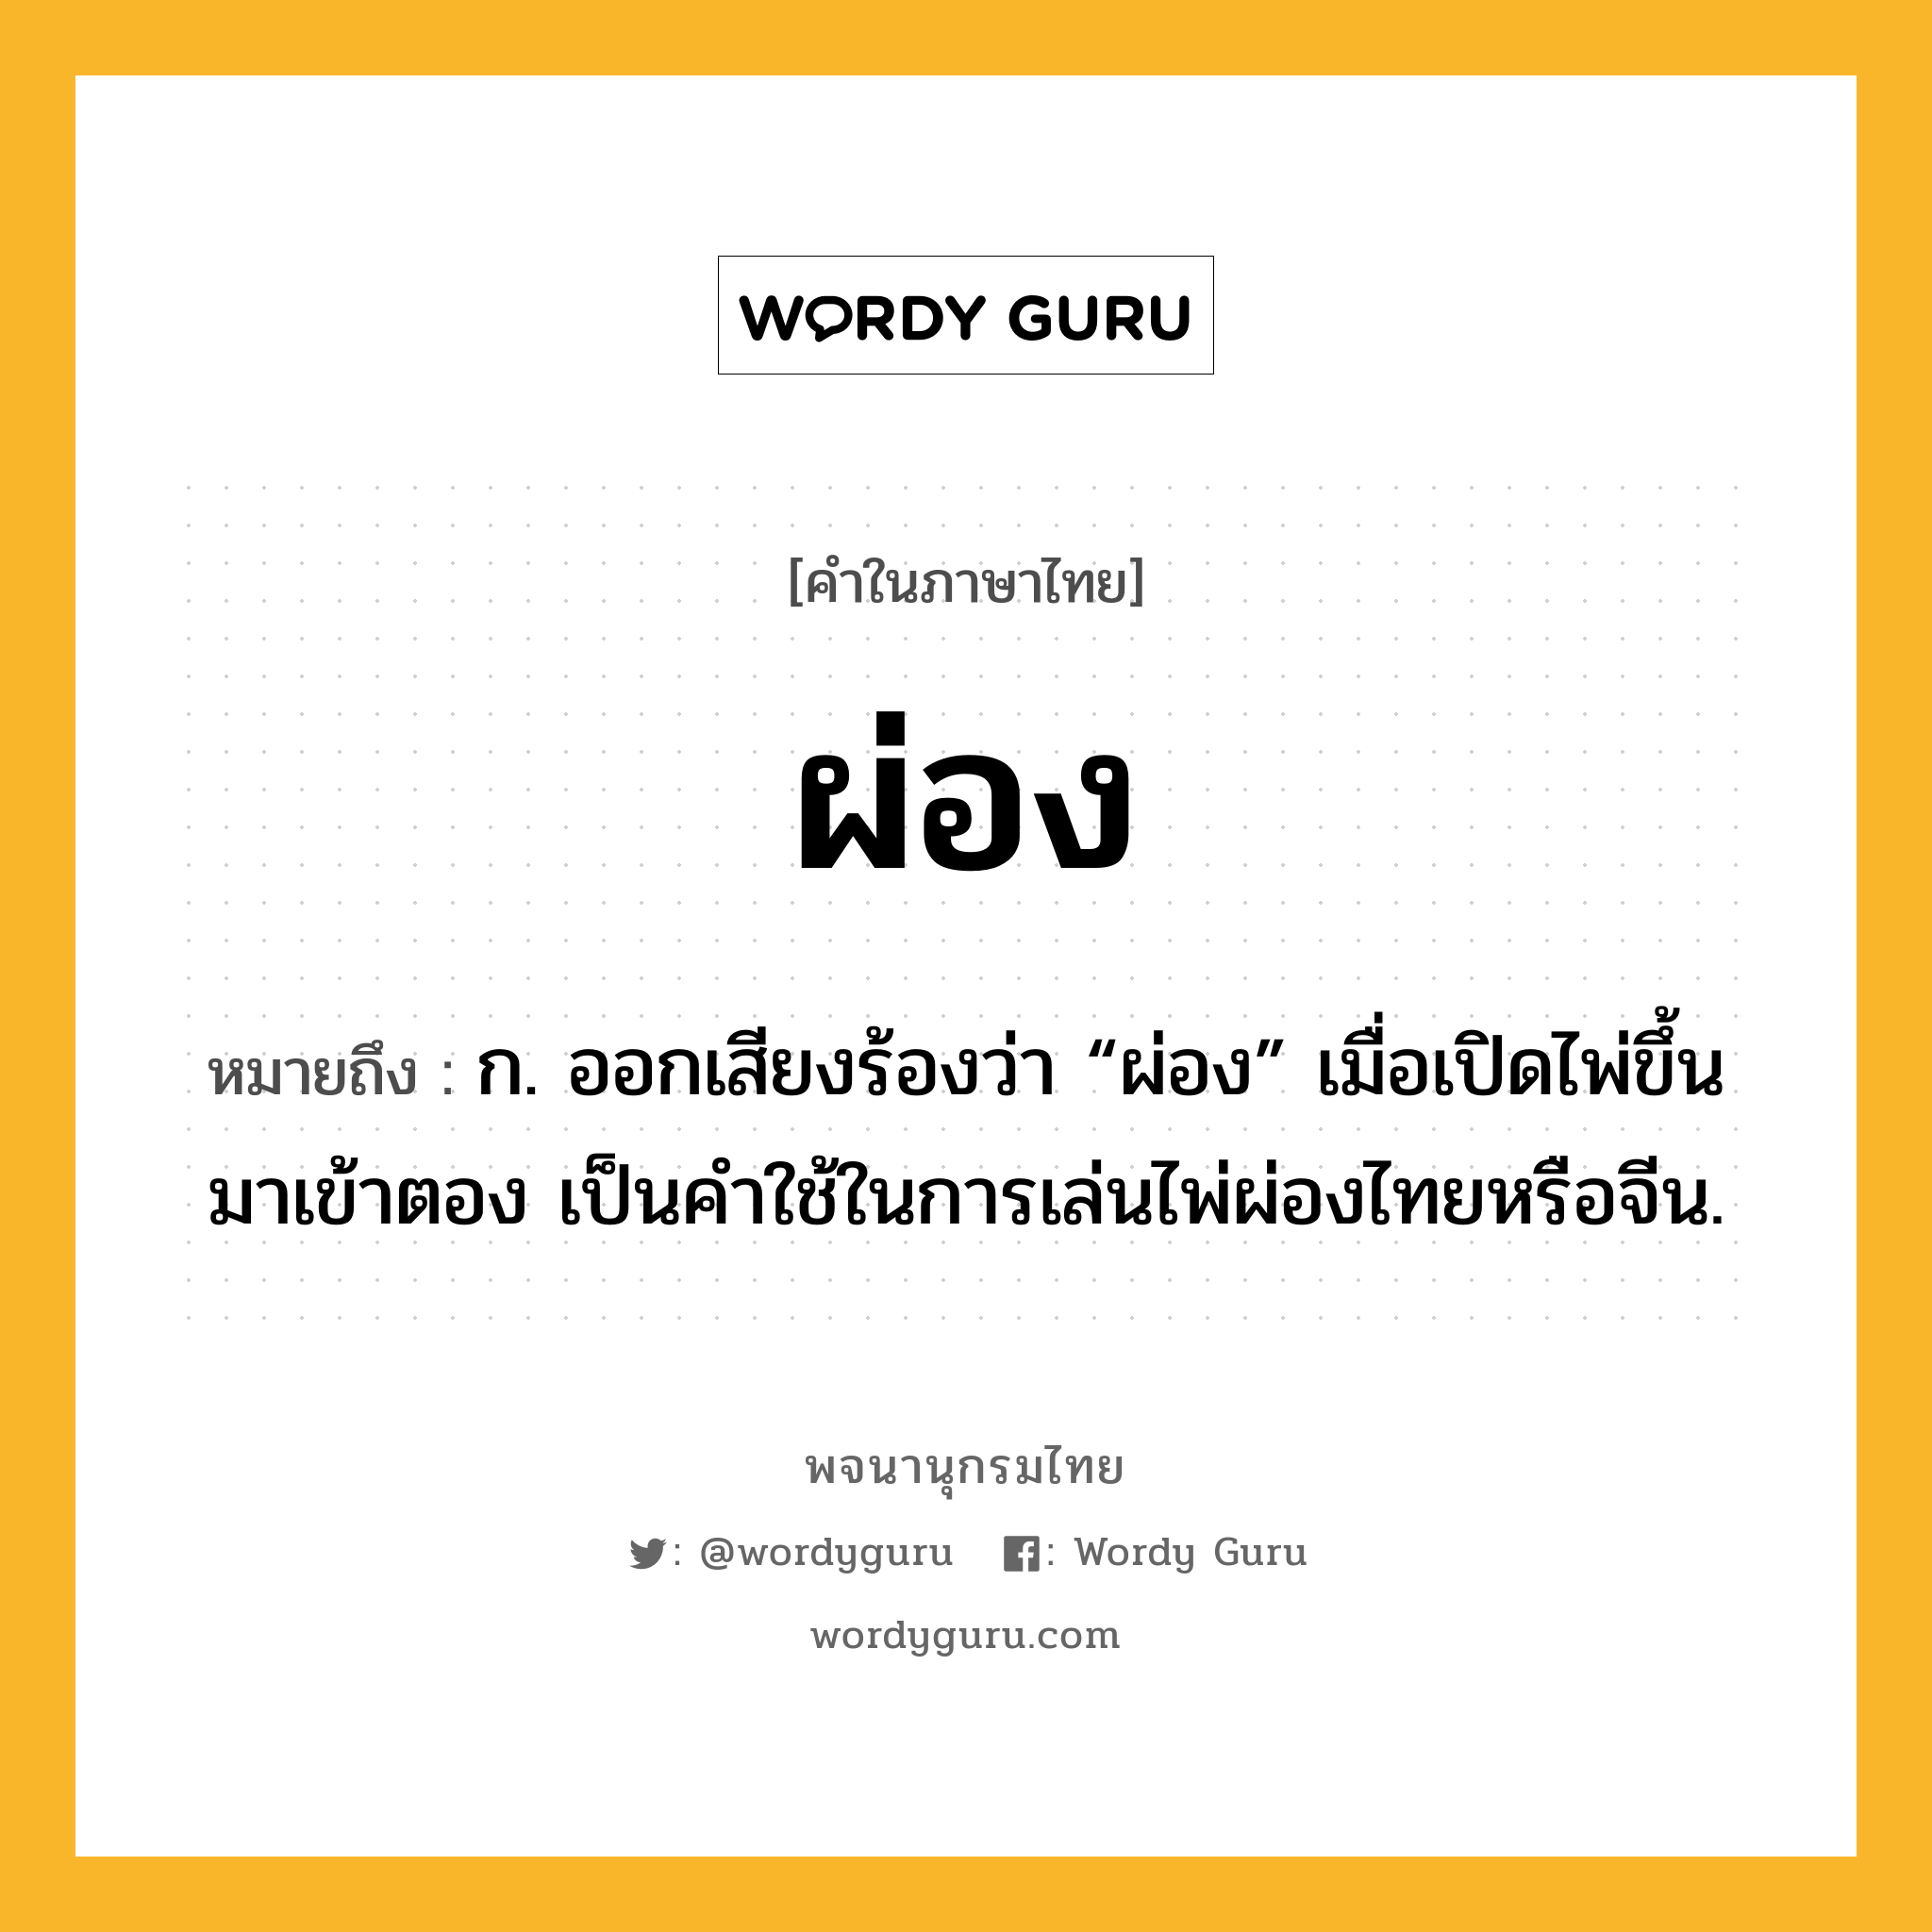 ผ่อง หมายถึงอะไร?, คำในภาษาไทย ผ่อง หมายถึง ก. ออกเสียงร้องว่า “ผ่อง” เมื่อเปิดไพ่ขึ้นมาเข้าตอง เป็นคําใช้ในการเล่นไพ่ผ่องไทยหรือจีน.